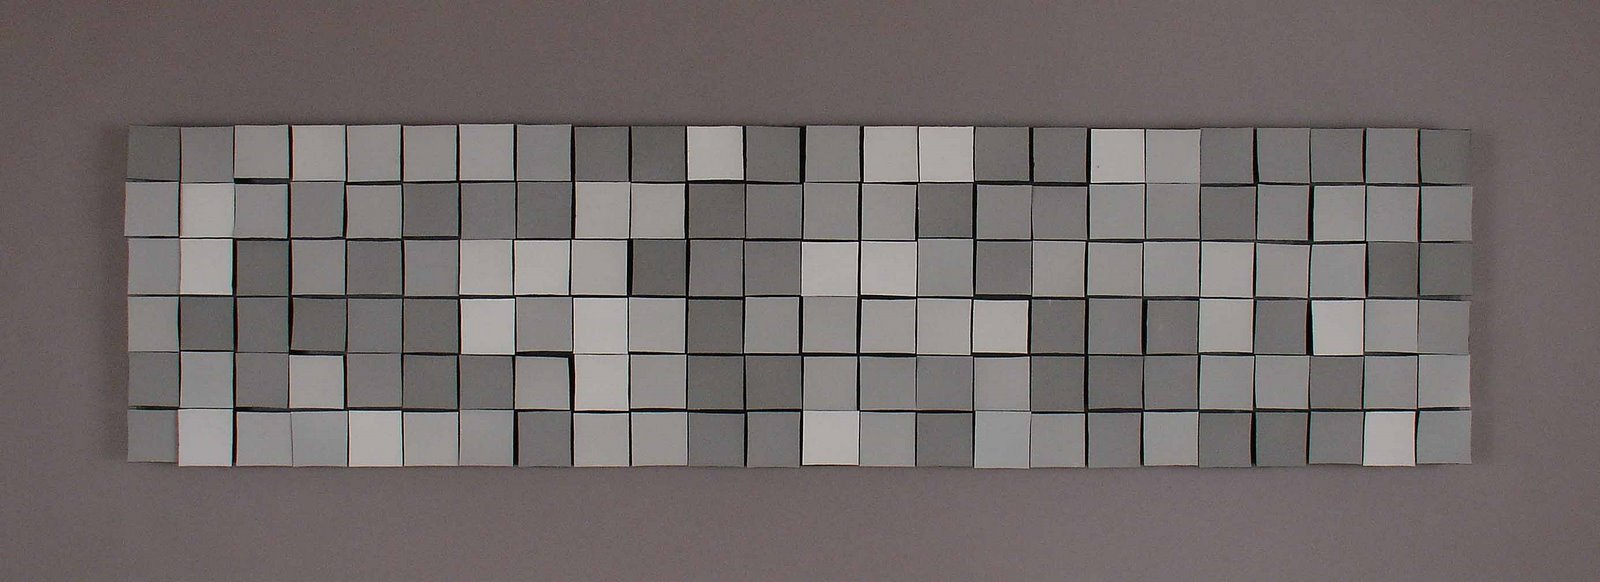 [Brian+M.+Besch+-+Untitled+(grey+tile+wall+piece+01).jpg]